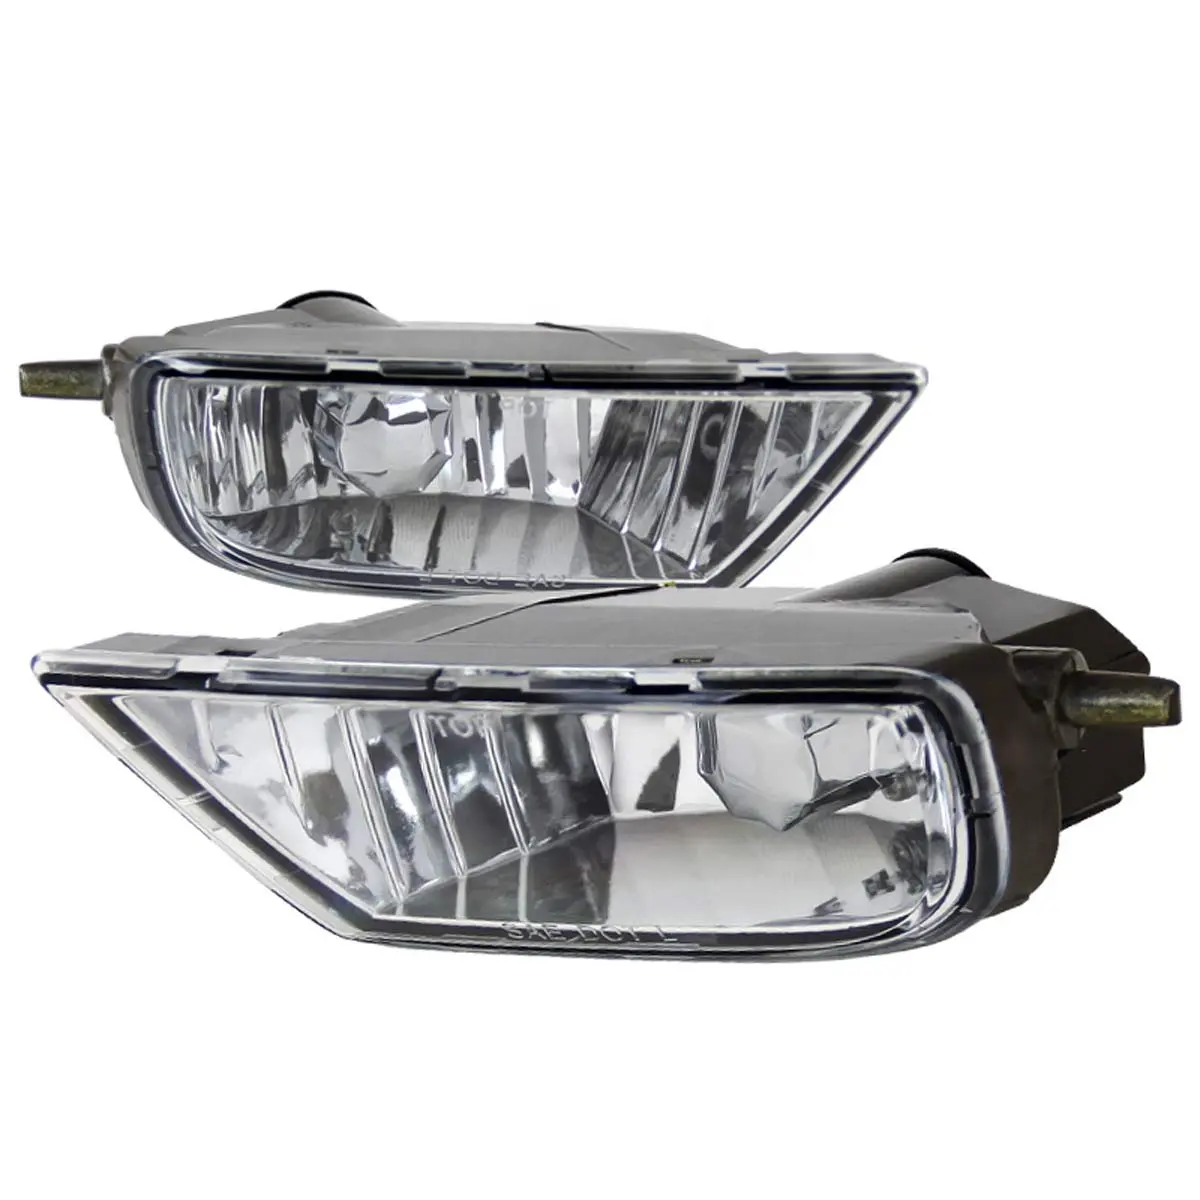 Piezas de repuesto para coche de aftermarket, lente transparente OE, luz antiniebla, Kit de lámpara de conducción para Toyota Sienna 1998 1999 2000 2001 2002 2003